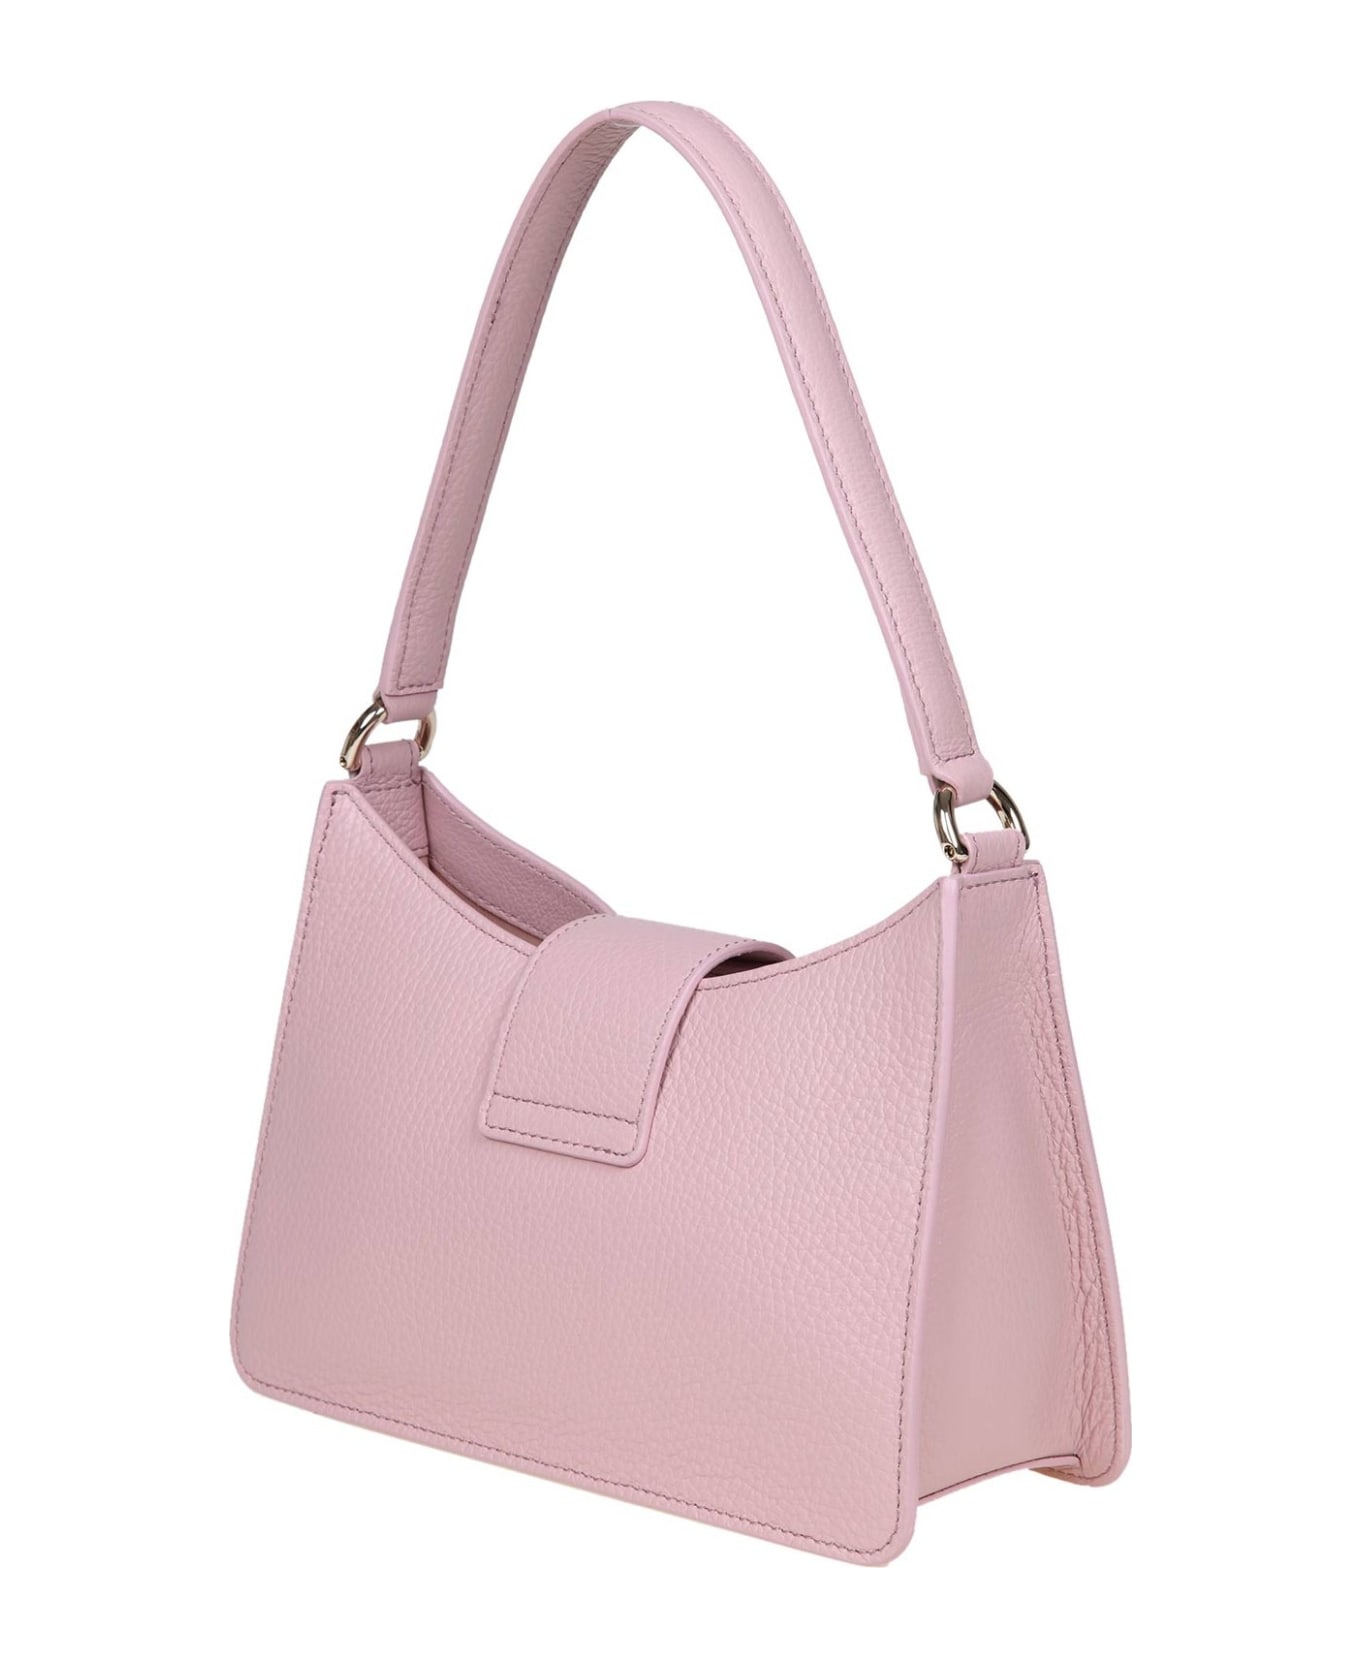 Furla 1927 S Shoulder Bag In Pink Soft Leather - Gold